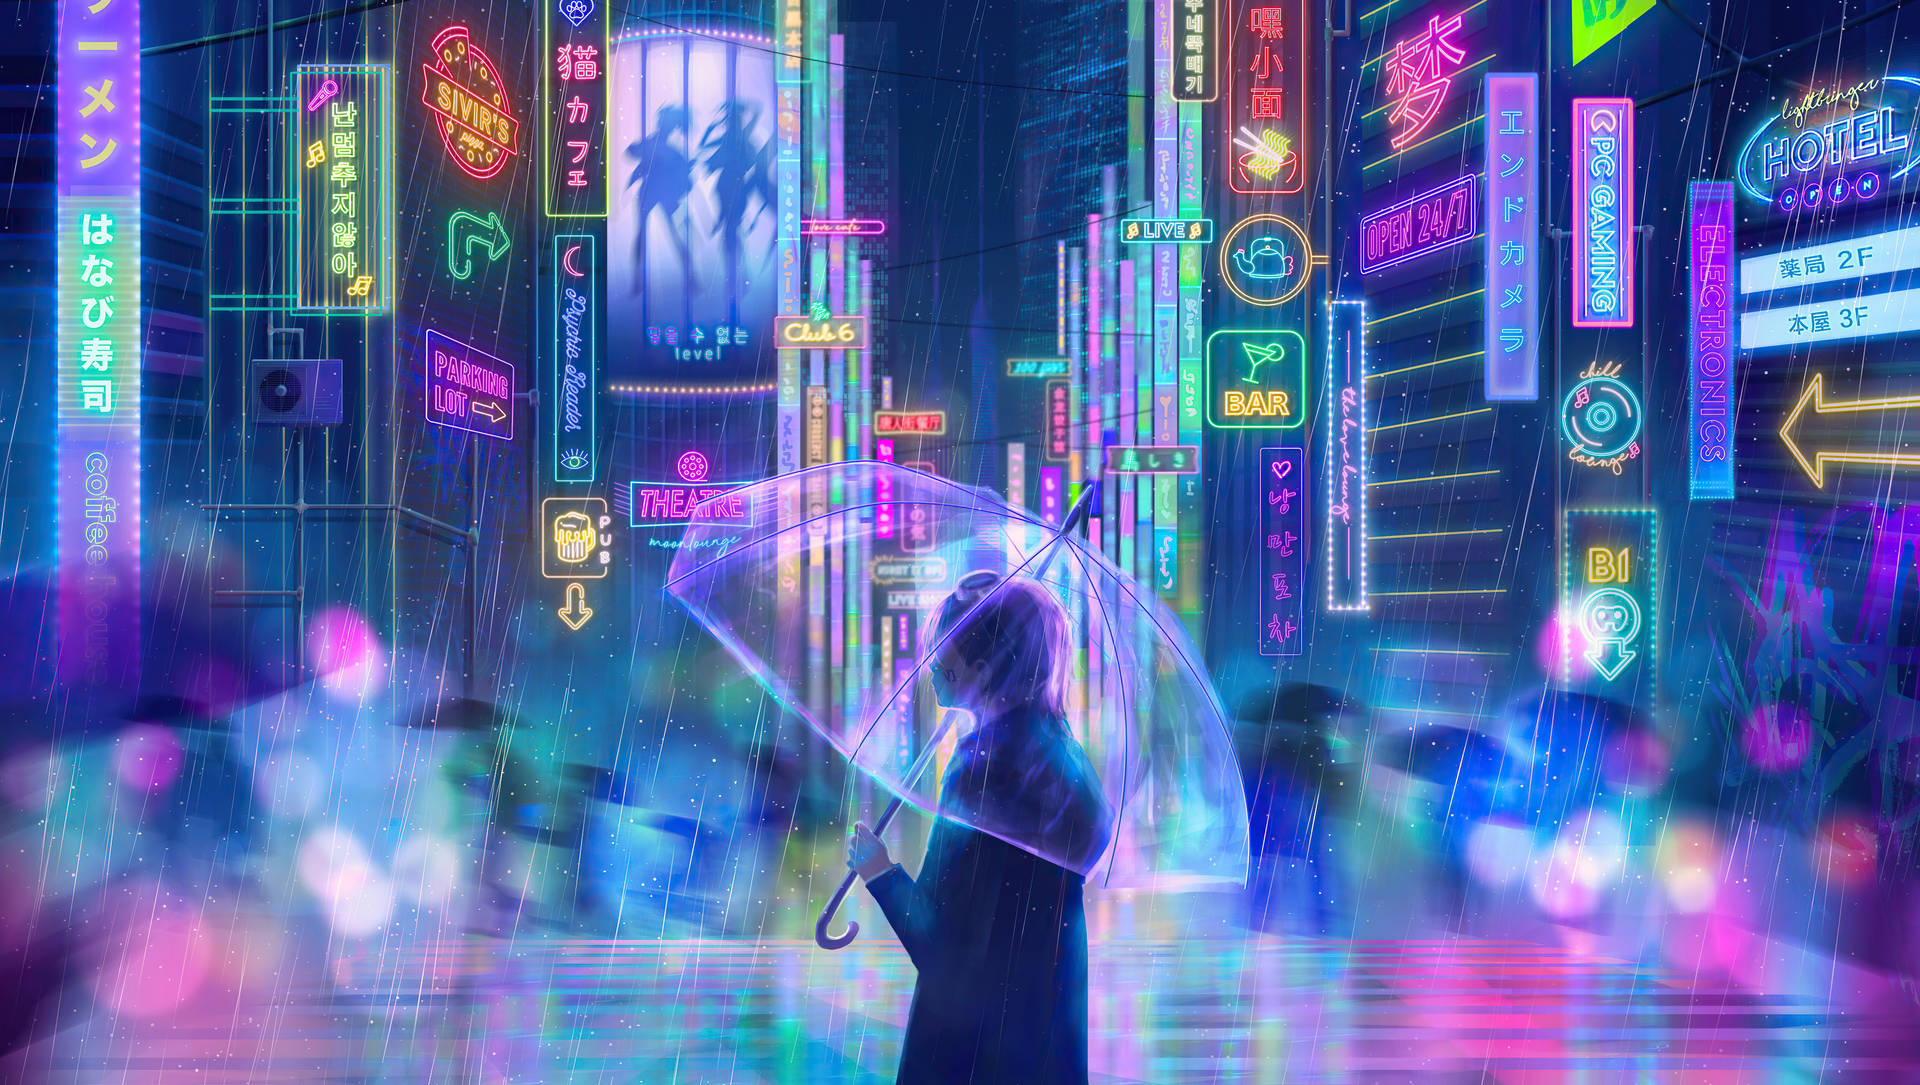 Neon Lights Anime Aesthetic